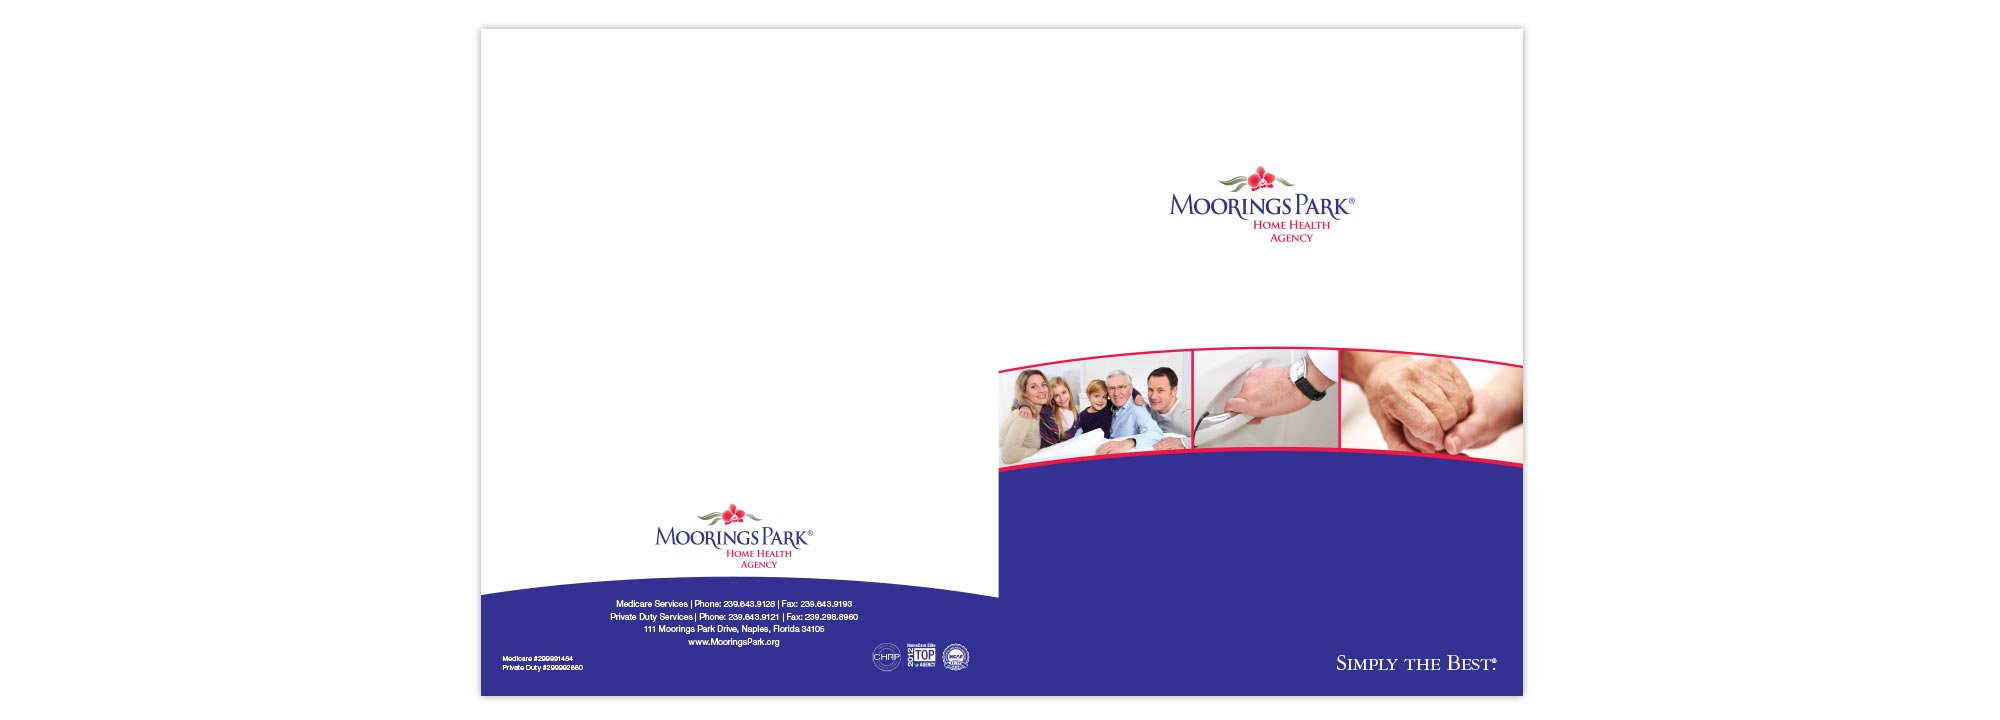 Moorings Park Home Health Agency Brochure